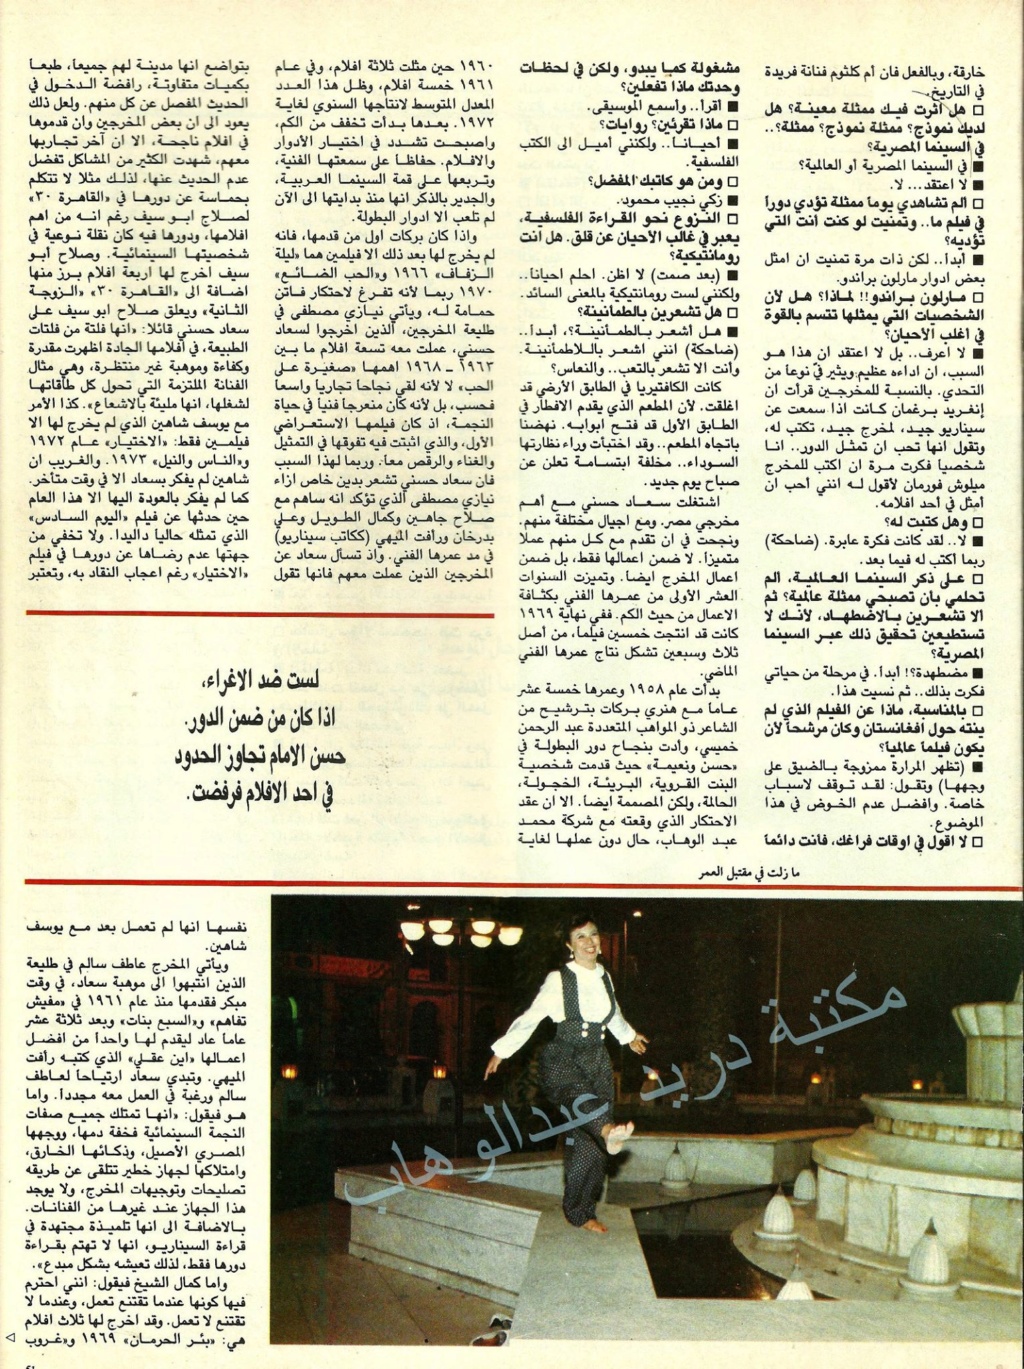 1986 - حوار صحفي : سعاد حسني .. انا في اجازة من العشق اتمناها قصيرة 1986 م 630